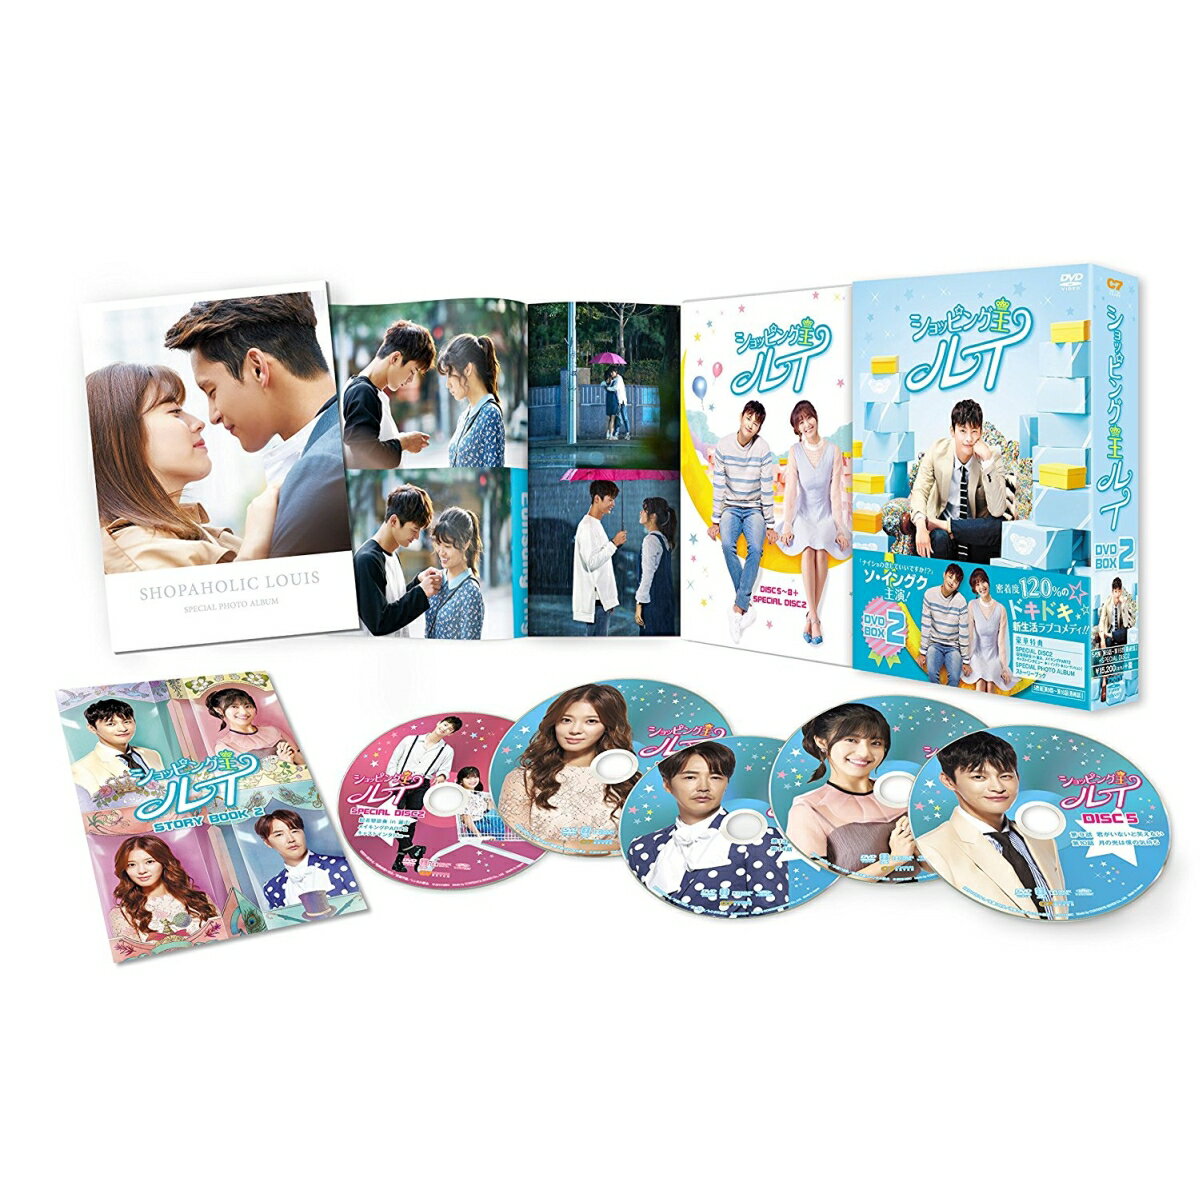 ショッピング王ルイ DVD-BOX2 [ ソ・イングク ]